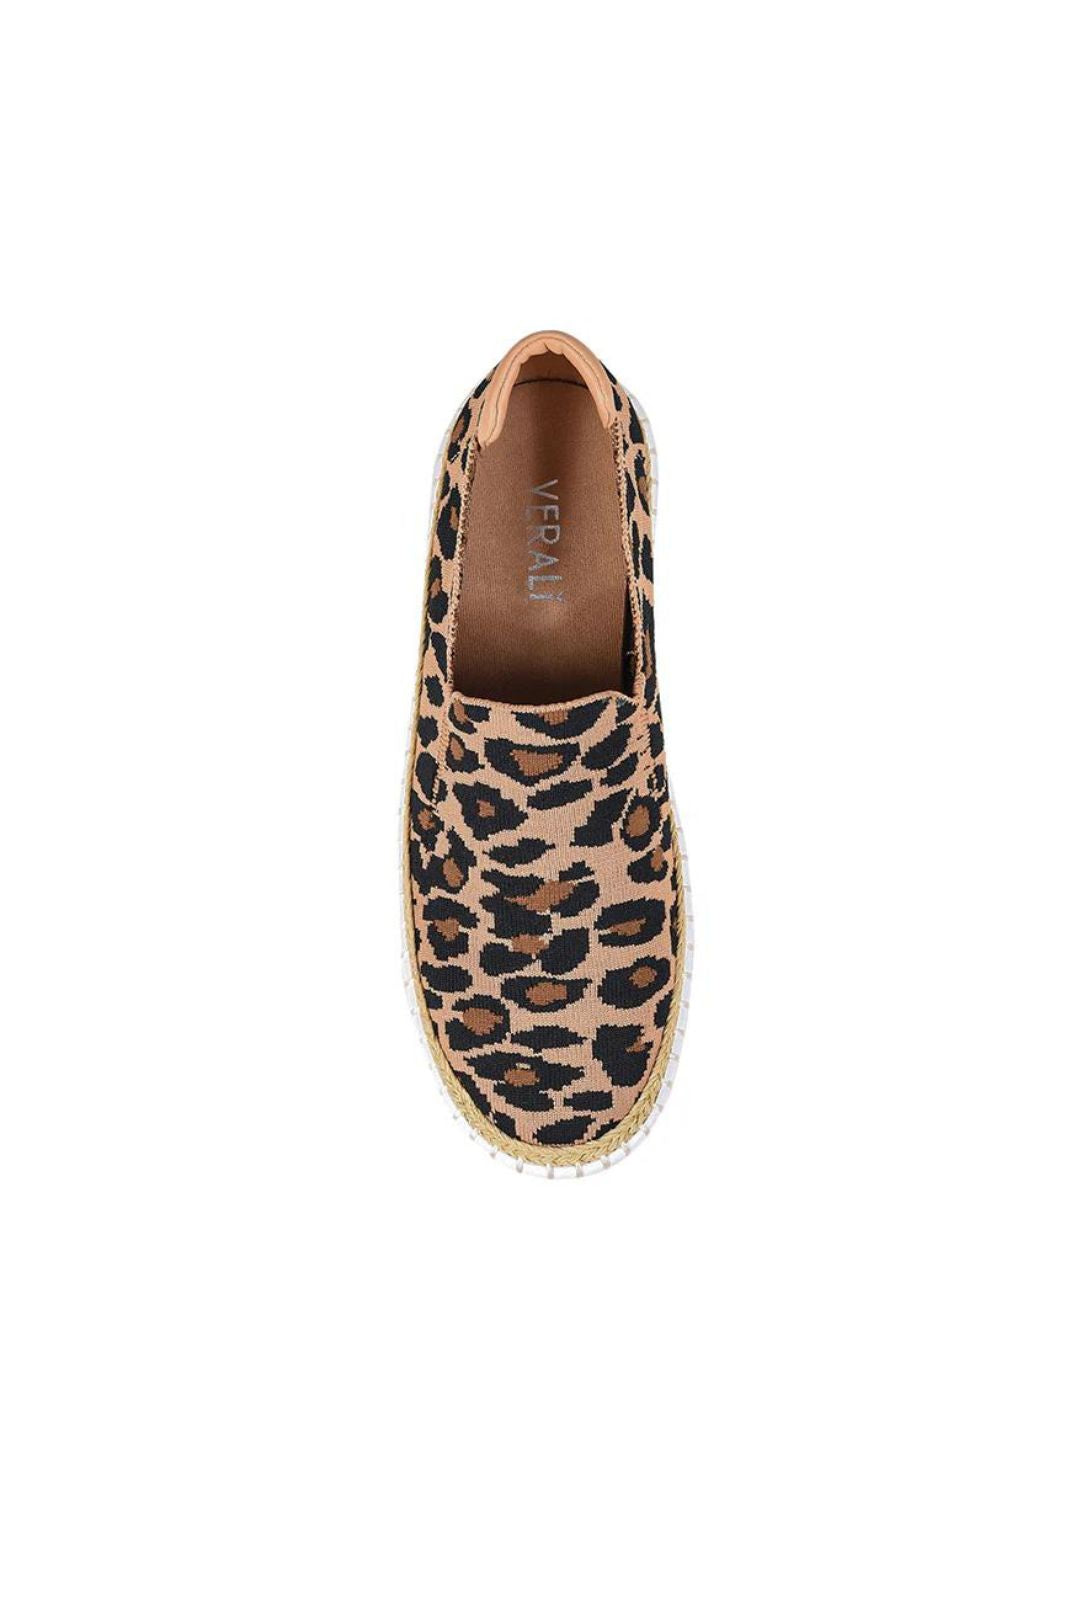 Queen Slip on Sneakers - Leopard